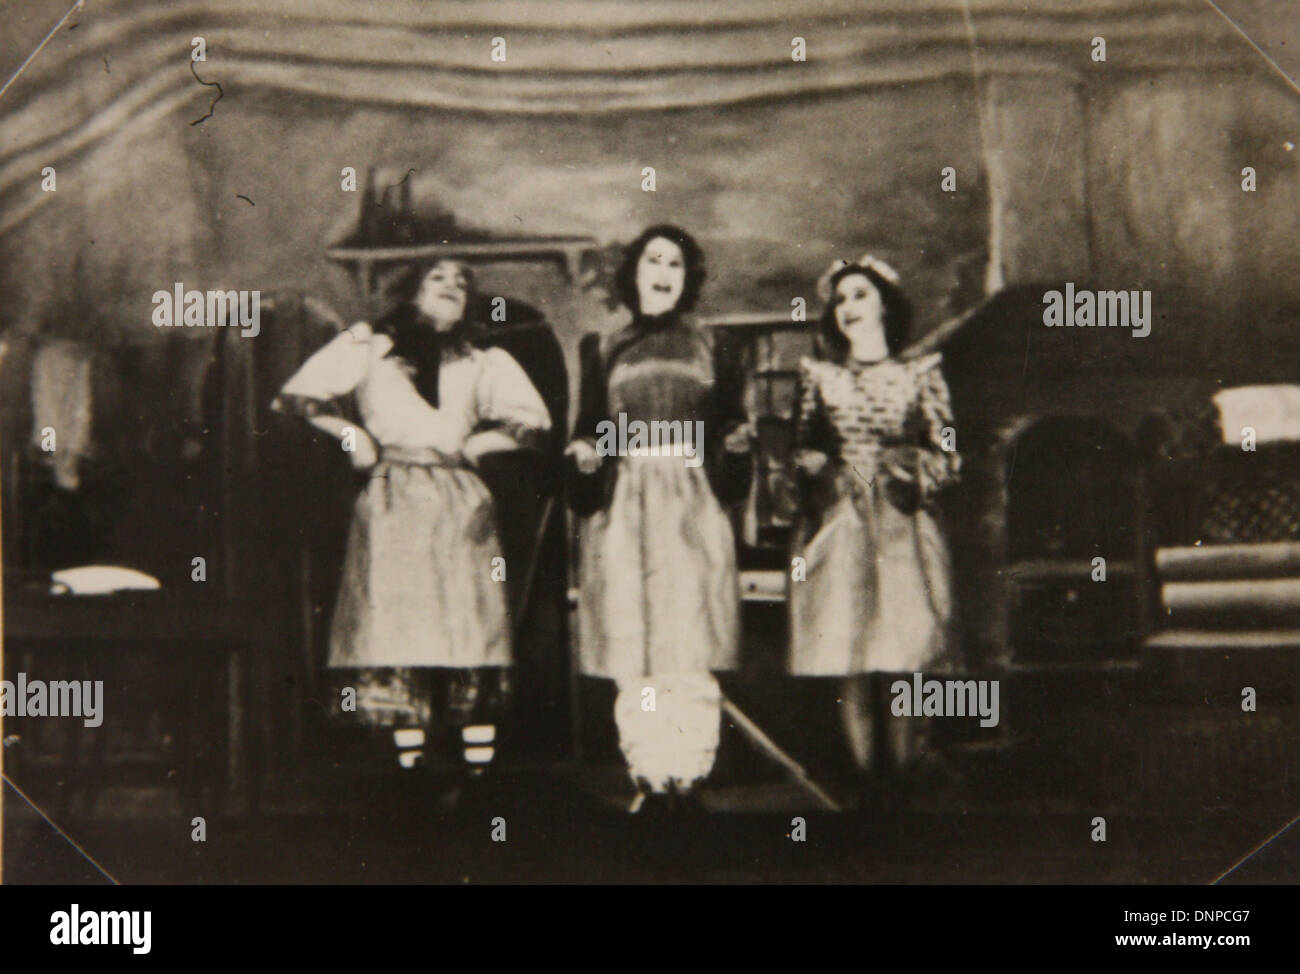 Recueillir des photographie de la princesse Margaret (à droite) et de la princesse Elizabeth (centre) dans le jeu Aladdin, 1943 Banque D'Images